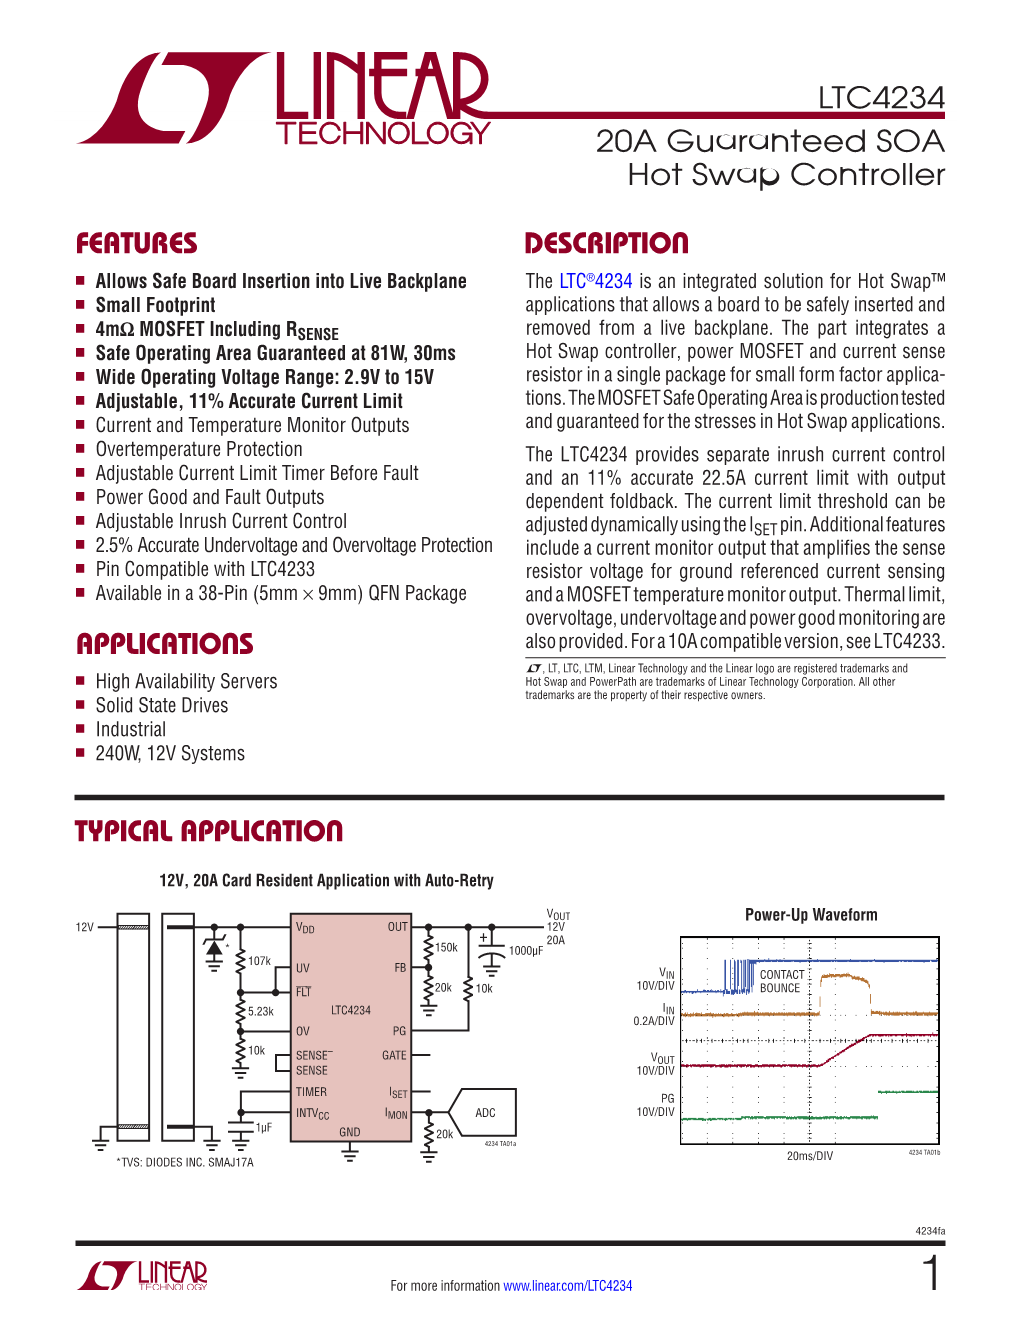 LTC4234 – 20A Guaranteed SOA Hot Swap Controller